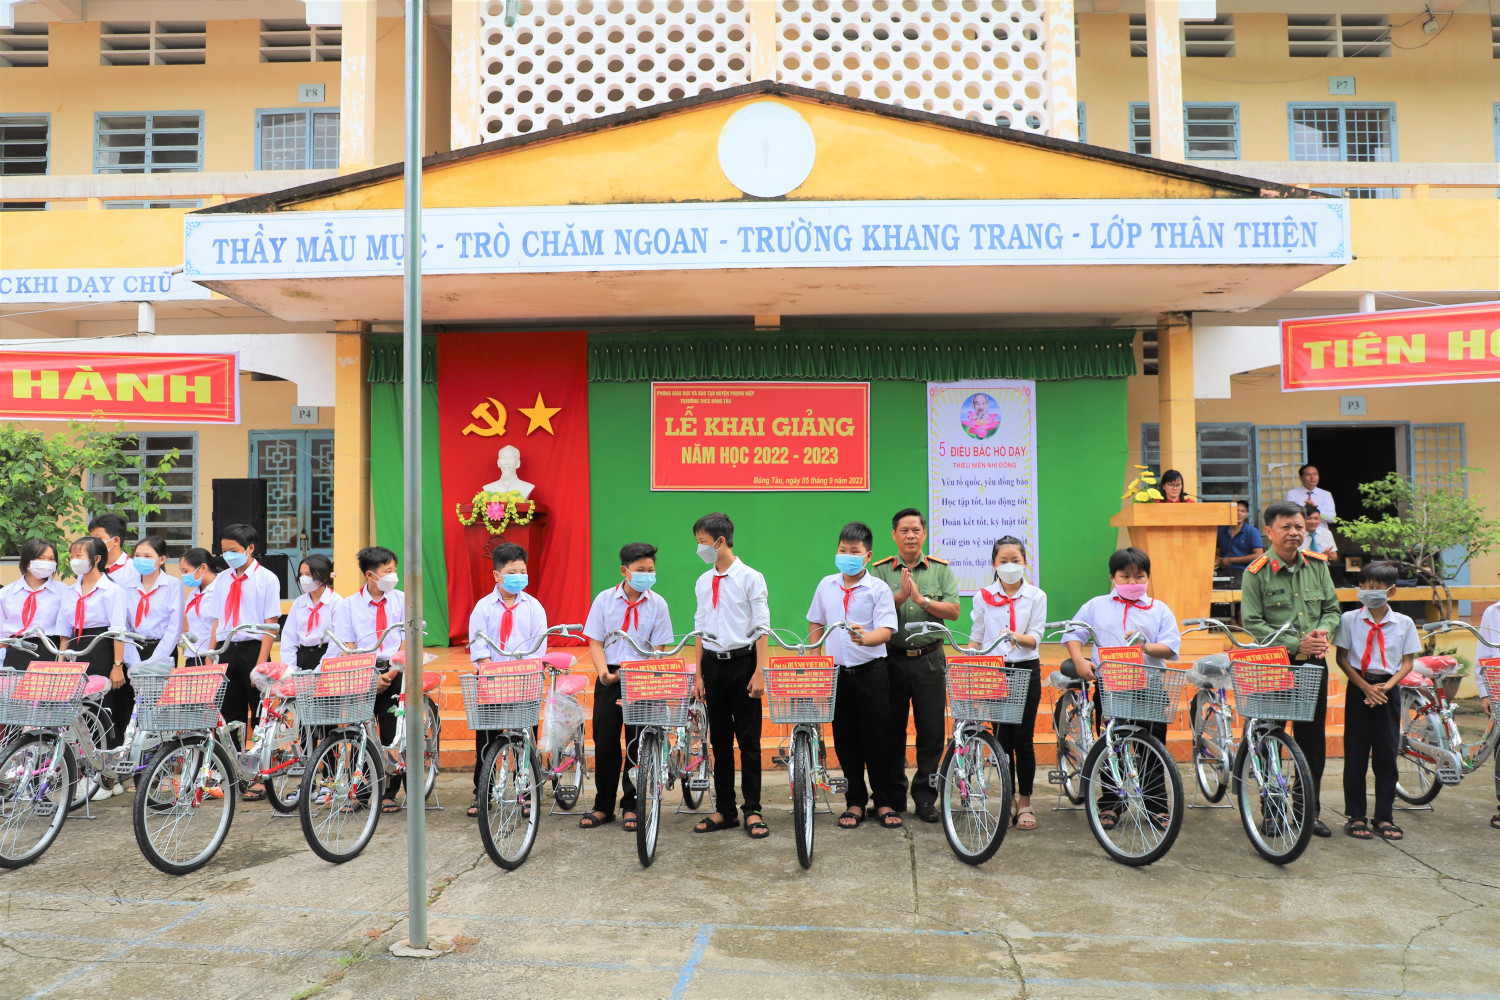 Đại tá Huỳnh Việt Hòa, Ủy viên Ban Thường vụ Tỉnh ủy, Bí thư Đảng ủy, Giám đốc Công an tỉnh (thứ 2 từ phải qua) và Thượng tá Phan Văn Kiệt, Phó Trưởng Phòng Tổ chức cán bộ (thứ 5 từ phải qua) trao xe đạp cho các em học sinh